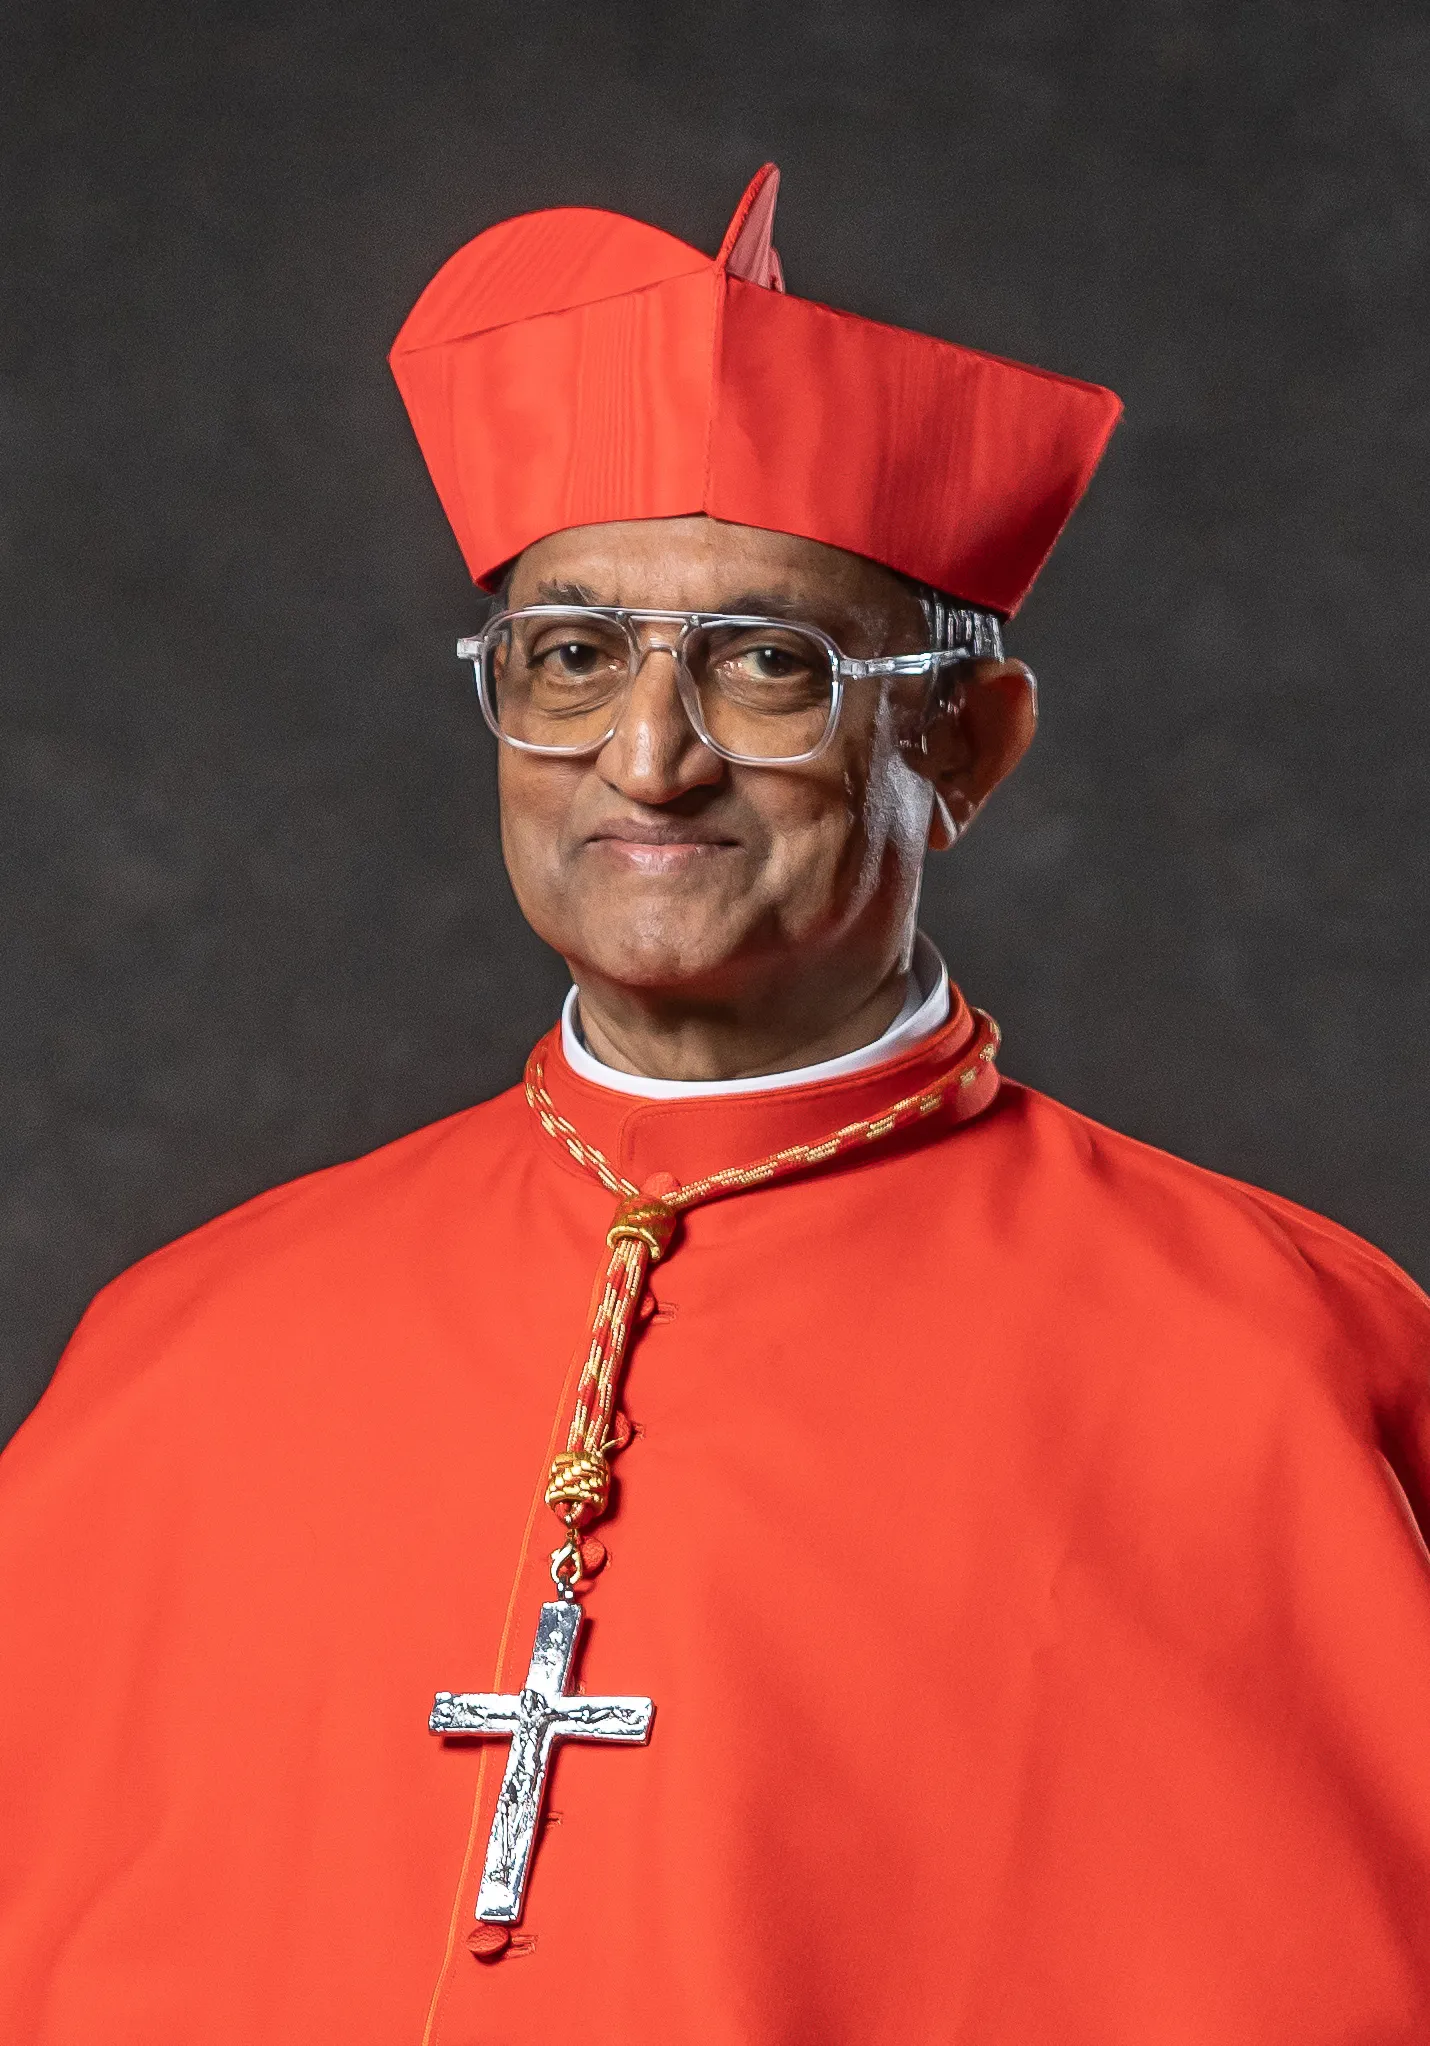 Meet His Eminence Cardinal Dato' Seri Sebastian Francis